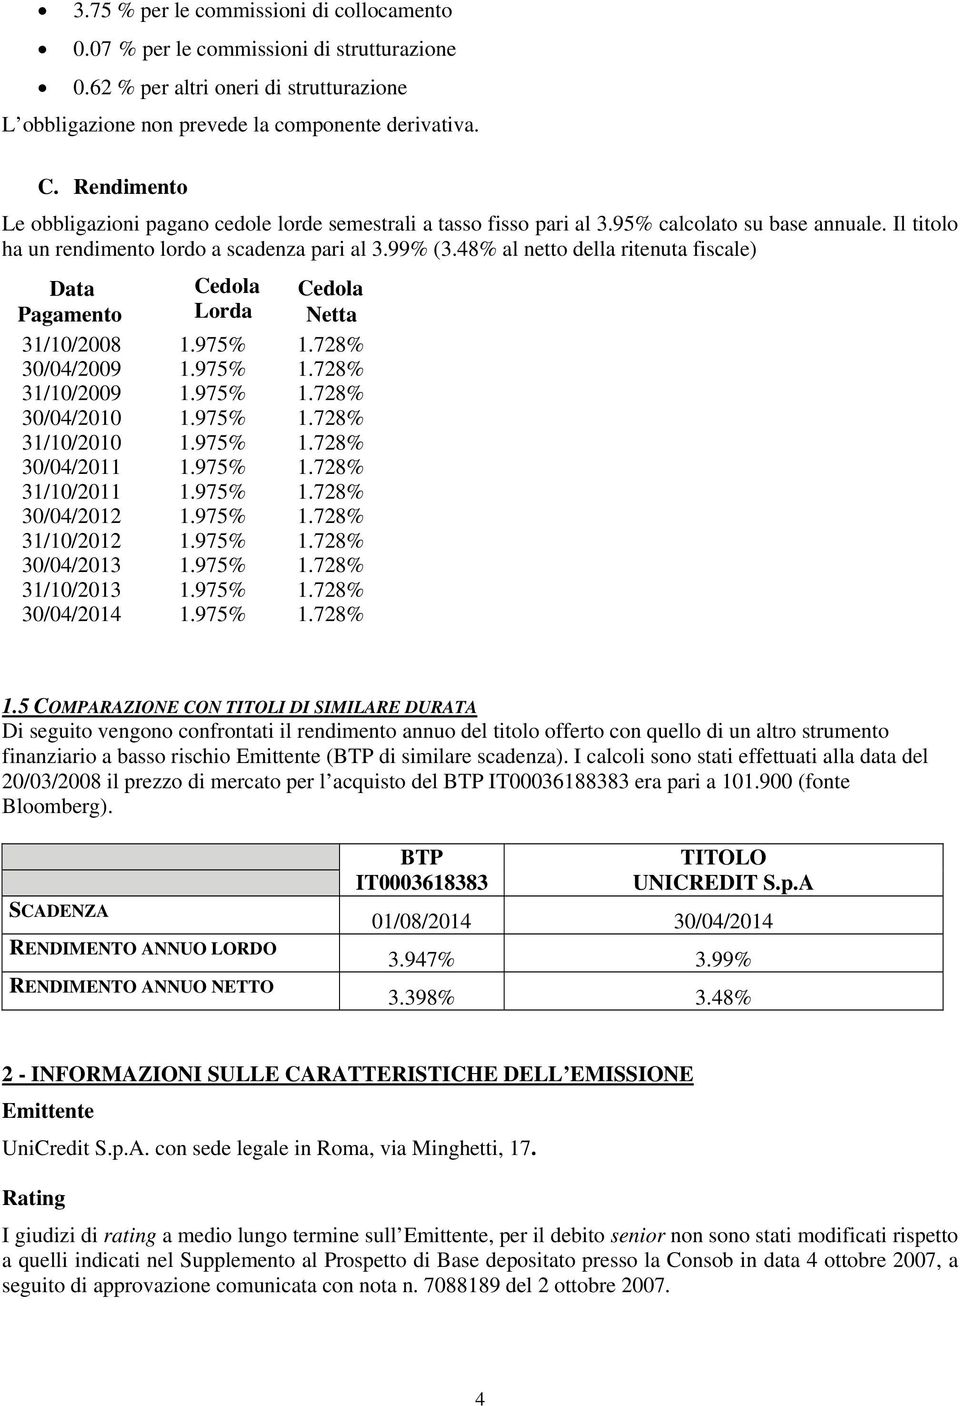 48% al netto della ritenuta fiscale) Data Pagamento Cedola Lorda Cedola Netta 31/10/2008 1.975% 1.728% 30/04/2009 1.975% 1.728% 31/10/2009 1.975% 1.728% 30/04/2010 1.975% 1.728% 31/10/2010 1.975% 1.728% 30/04/2011 1.